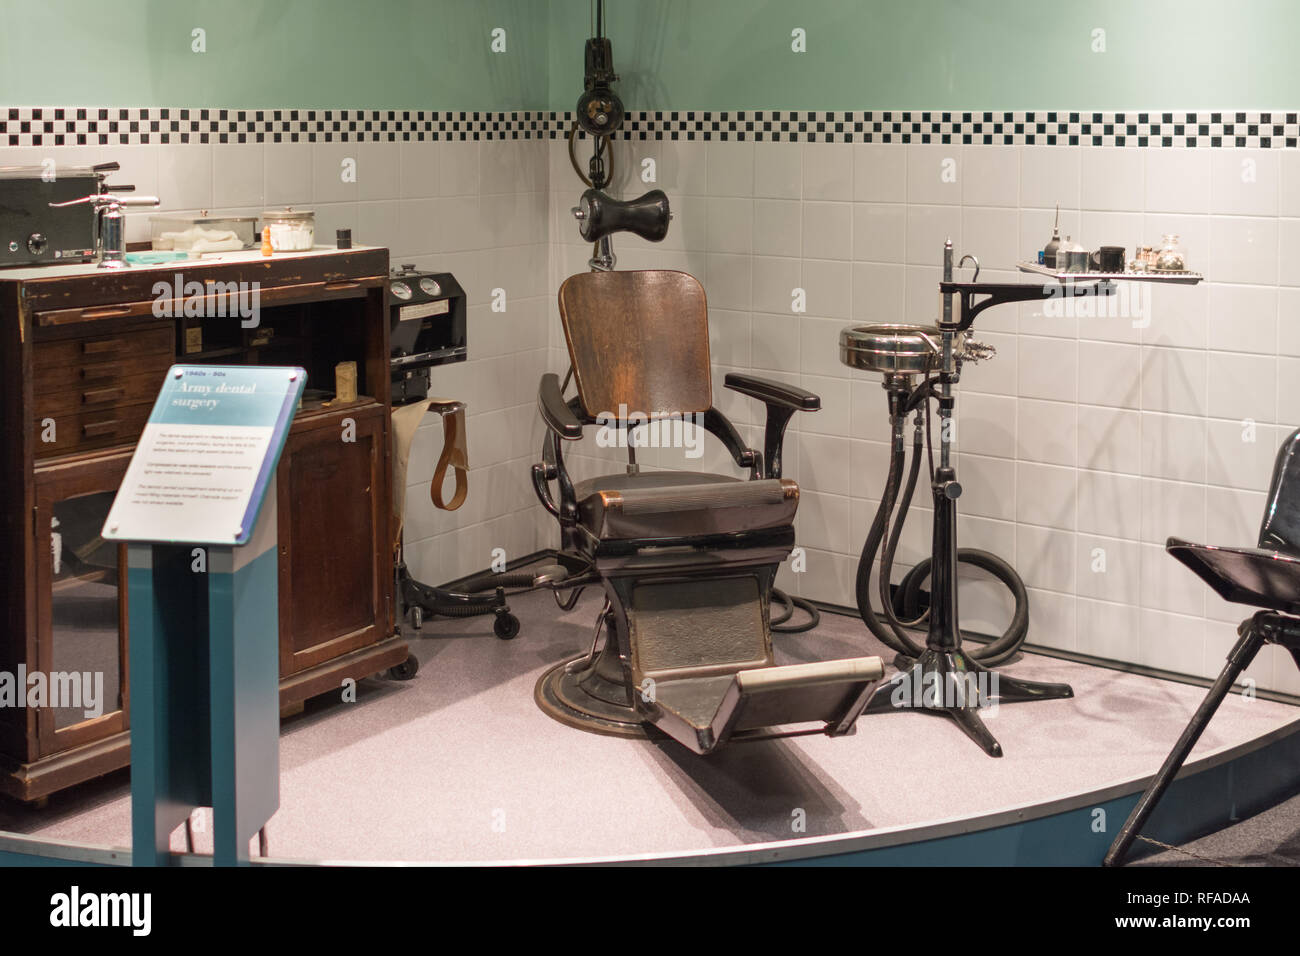 Intérieur du Musée de la médecine militaire, caserne Keogh, Mytchett, Surrey, UK. Chirurgie dentaire et de l'équipement la pièce (1940 à 1950) Banque D'Images